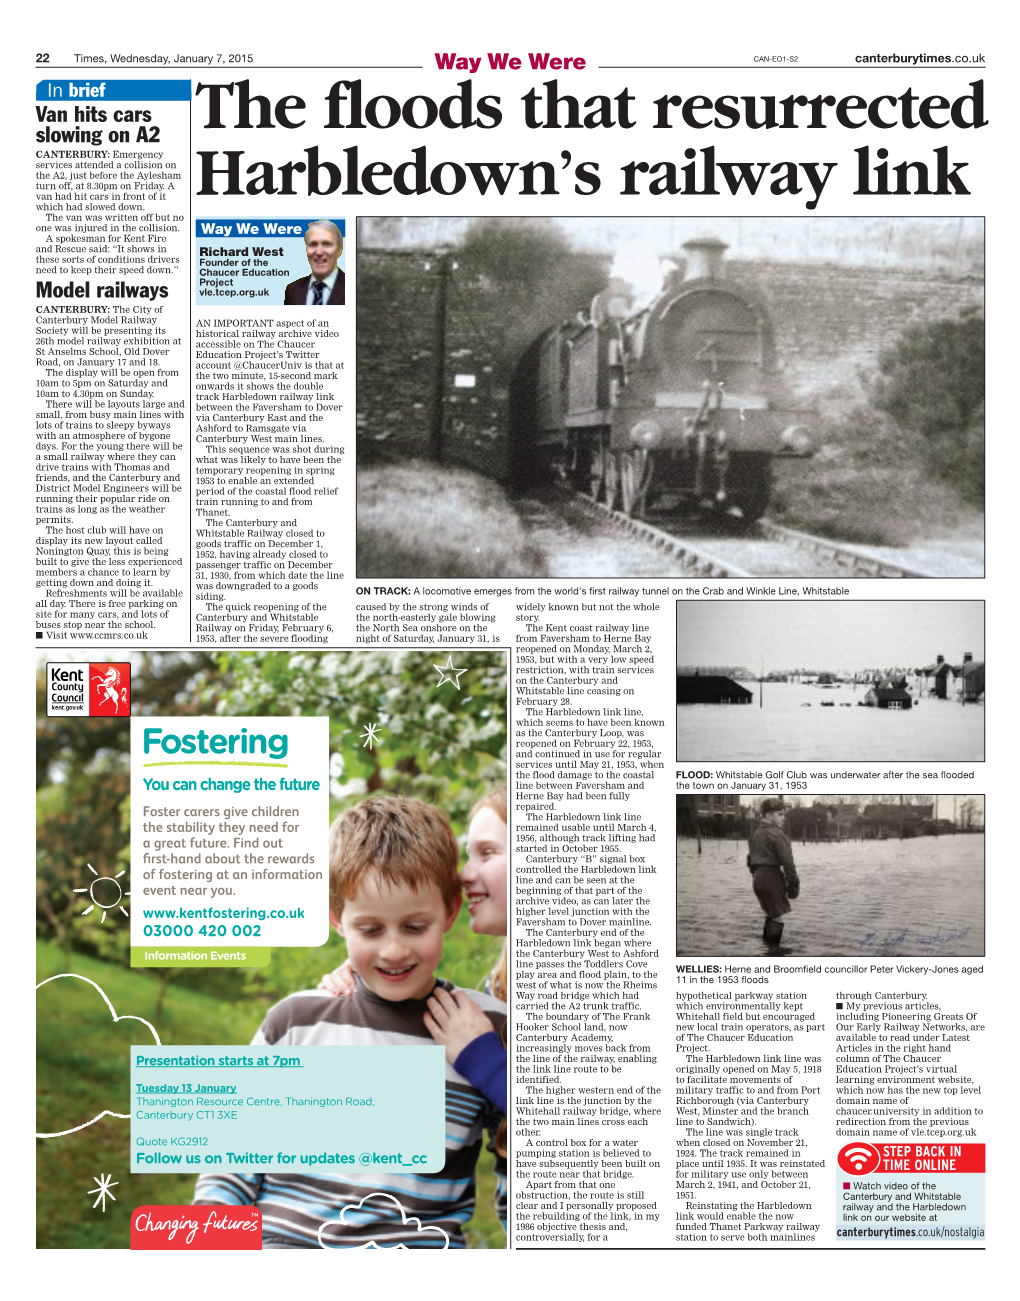 The Floods That Resurrected Harbledown's Railway Link